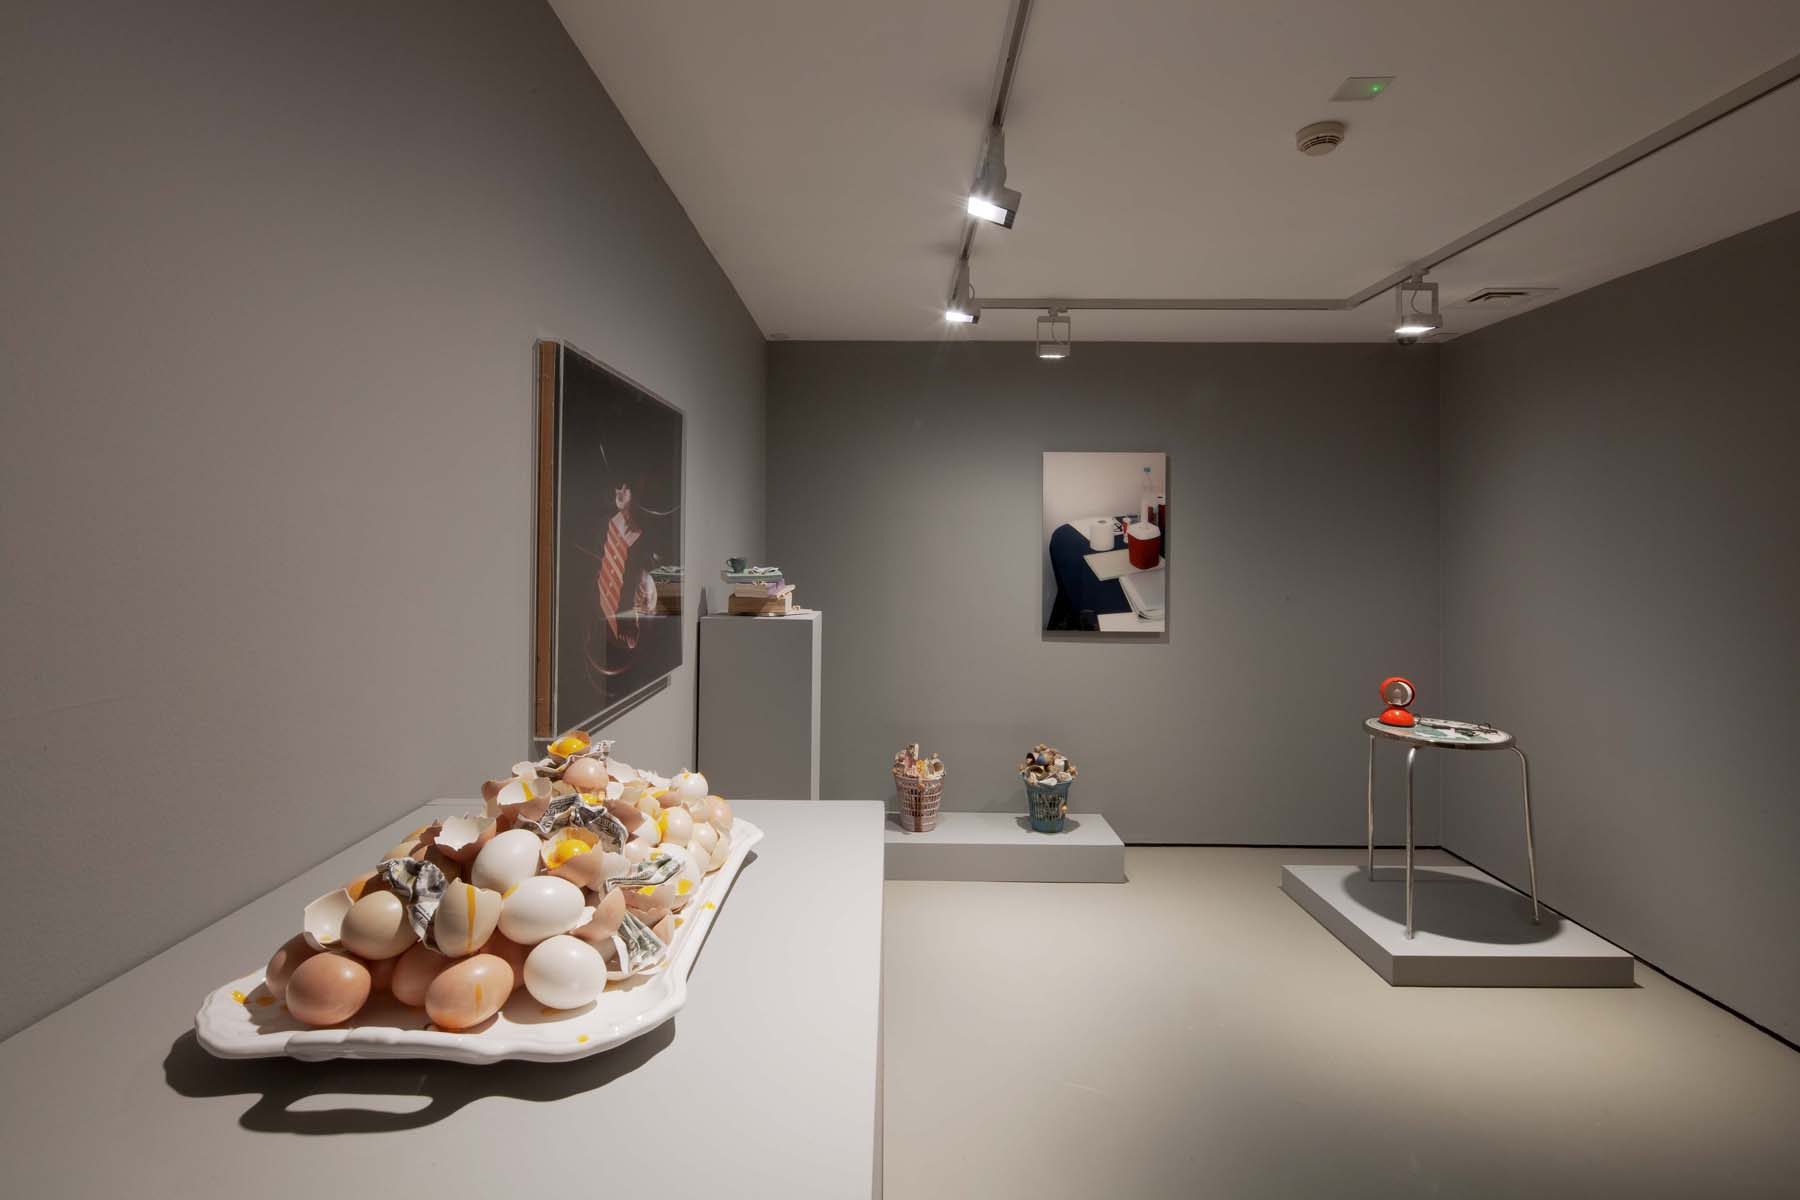 Bertozzi & Casoni, exhibition view, 2022, Galleria Civica, Trento, ph. Francesco Mattuzzi